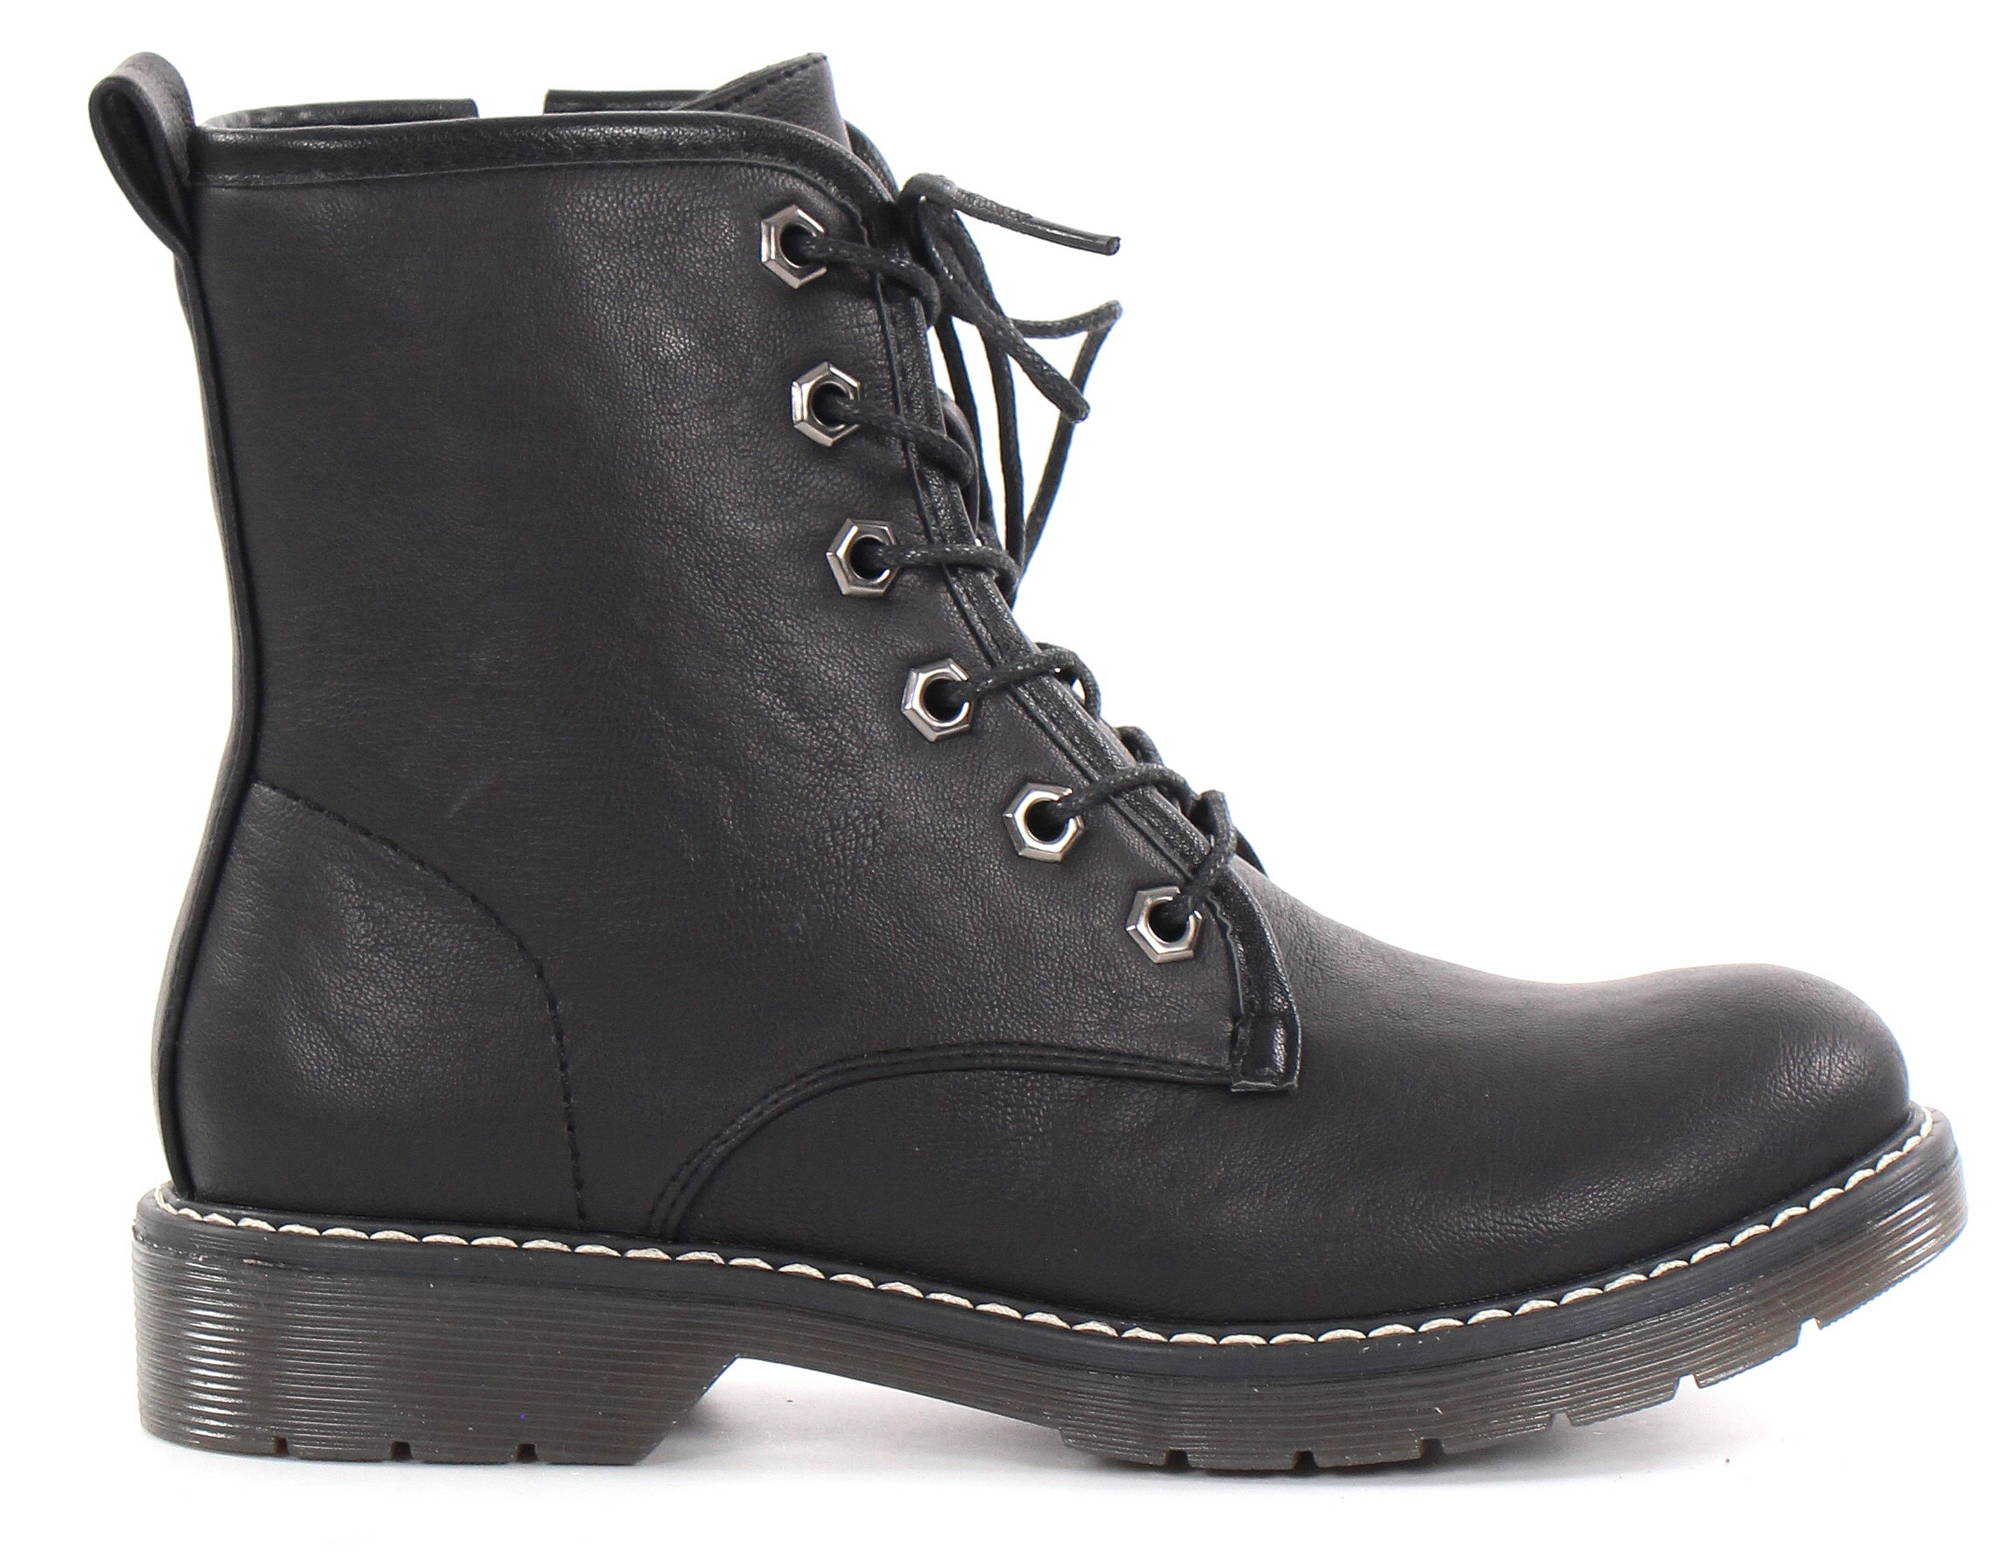 Migant Ankle Boots A920-212, Black - Stilettoshop.eu webstore